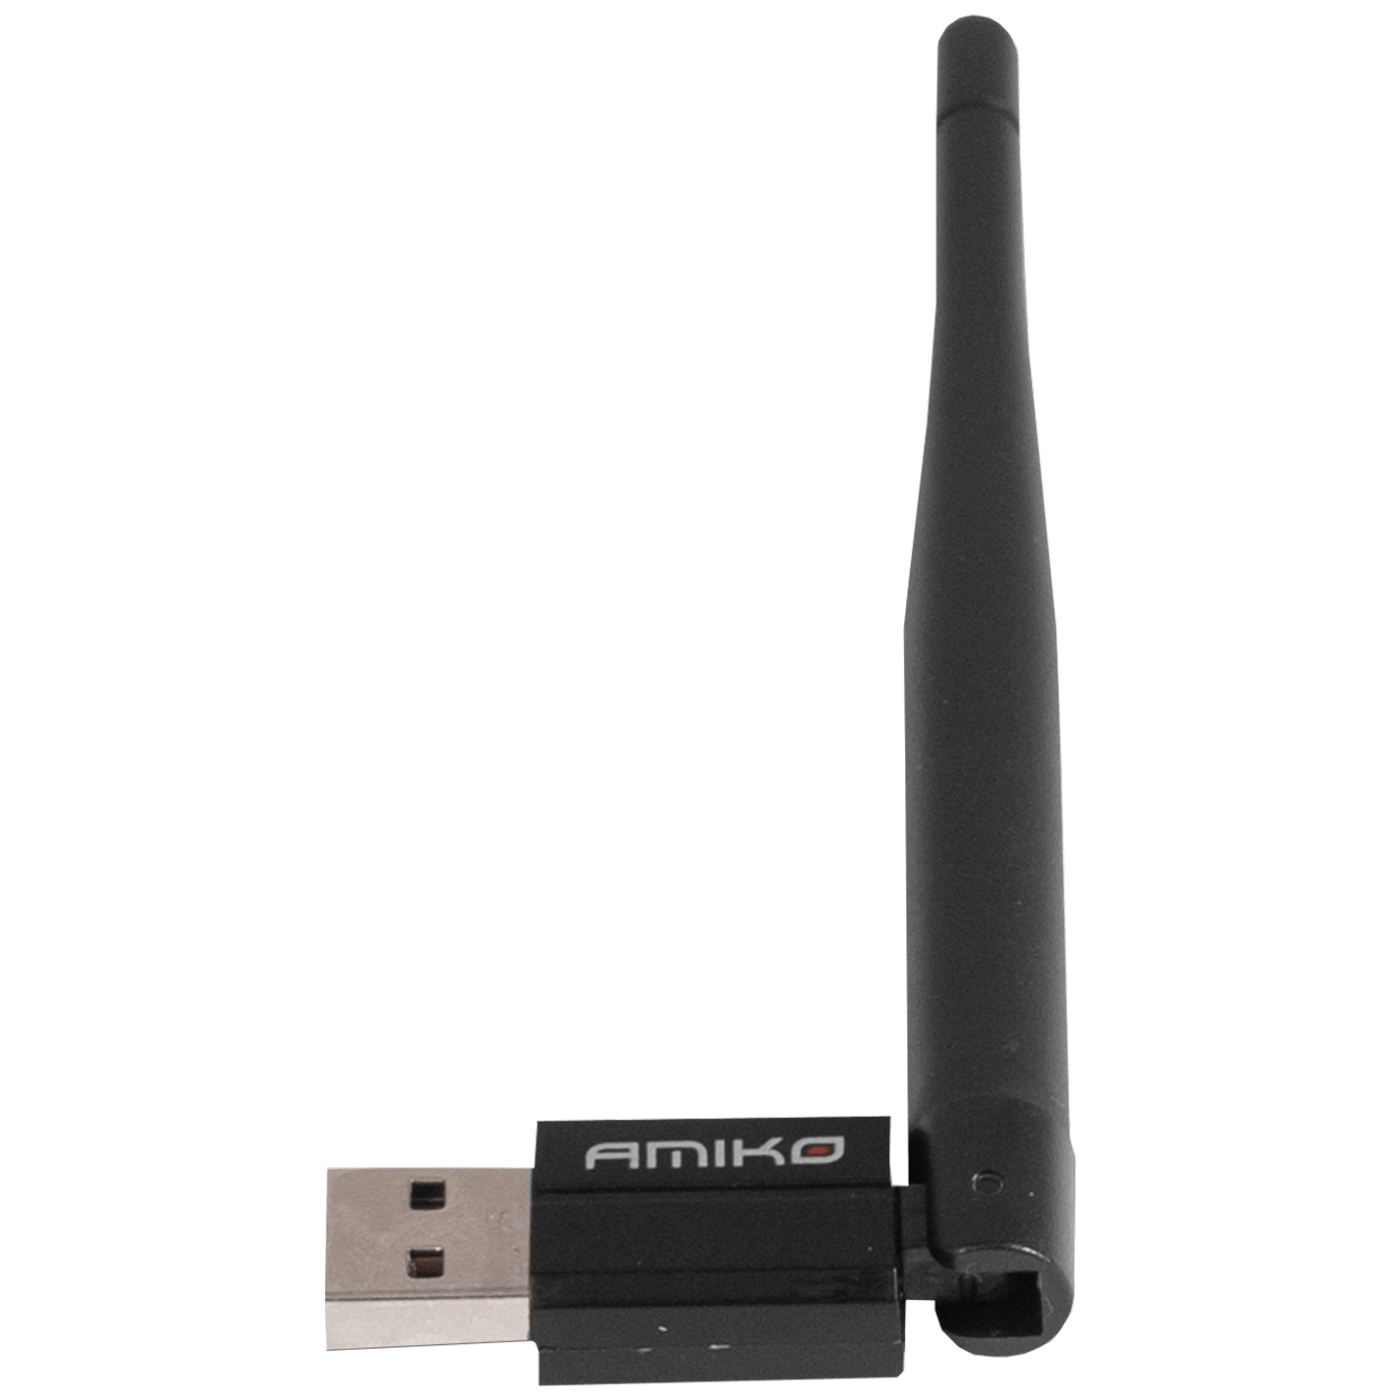 Wi-Fi mrežna kartica, USB, 2.4 GHz, 150 Mbps